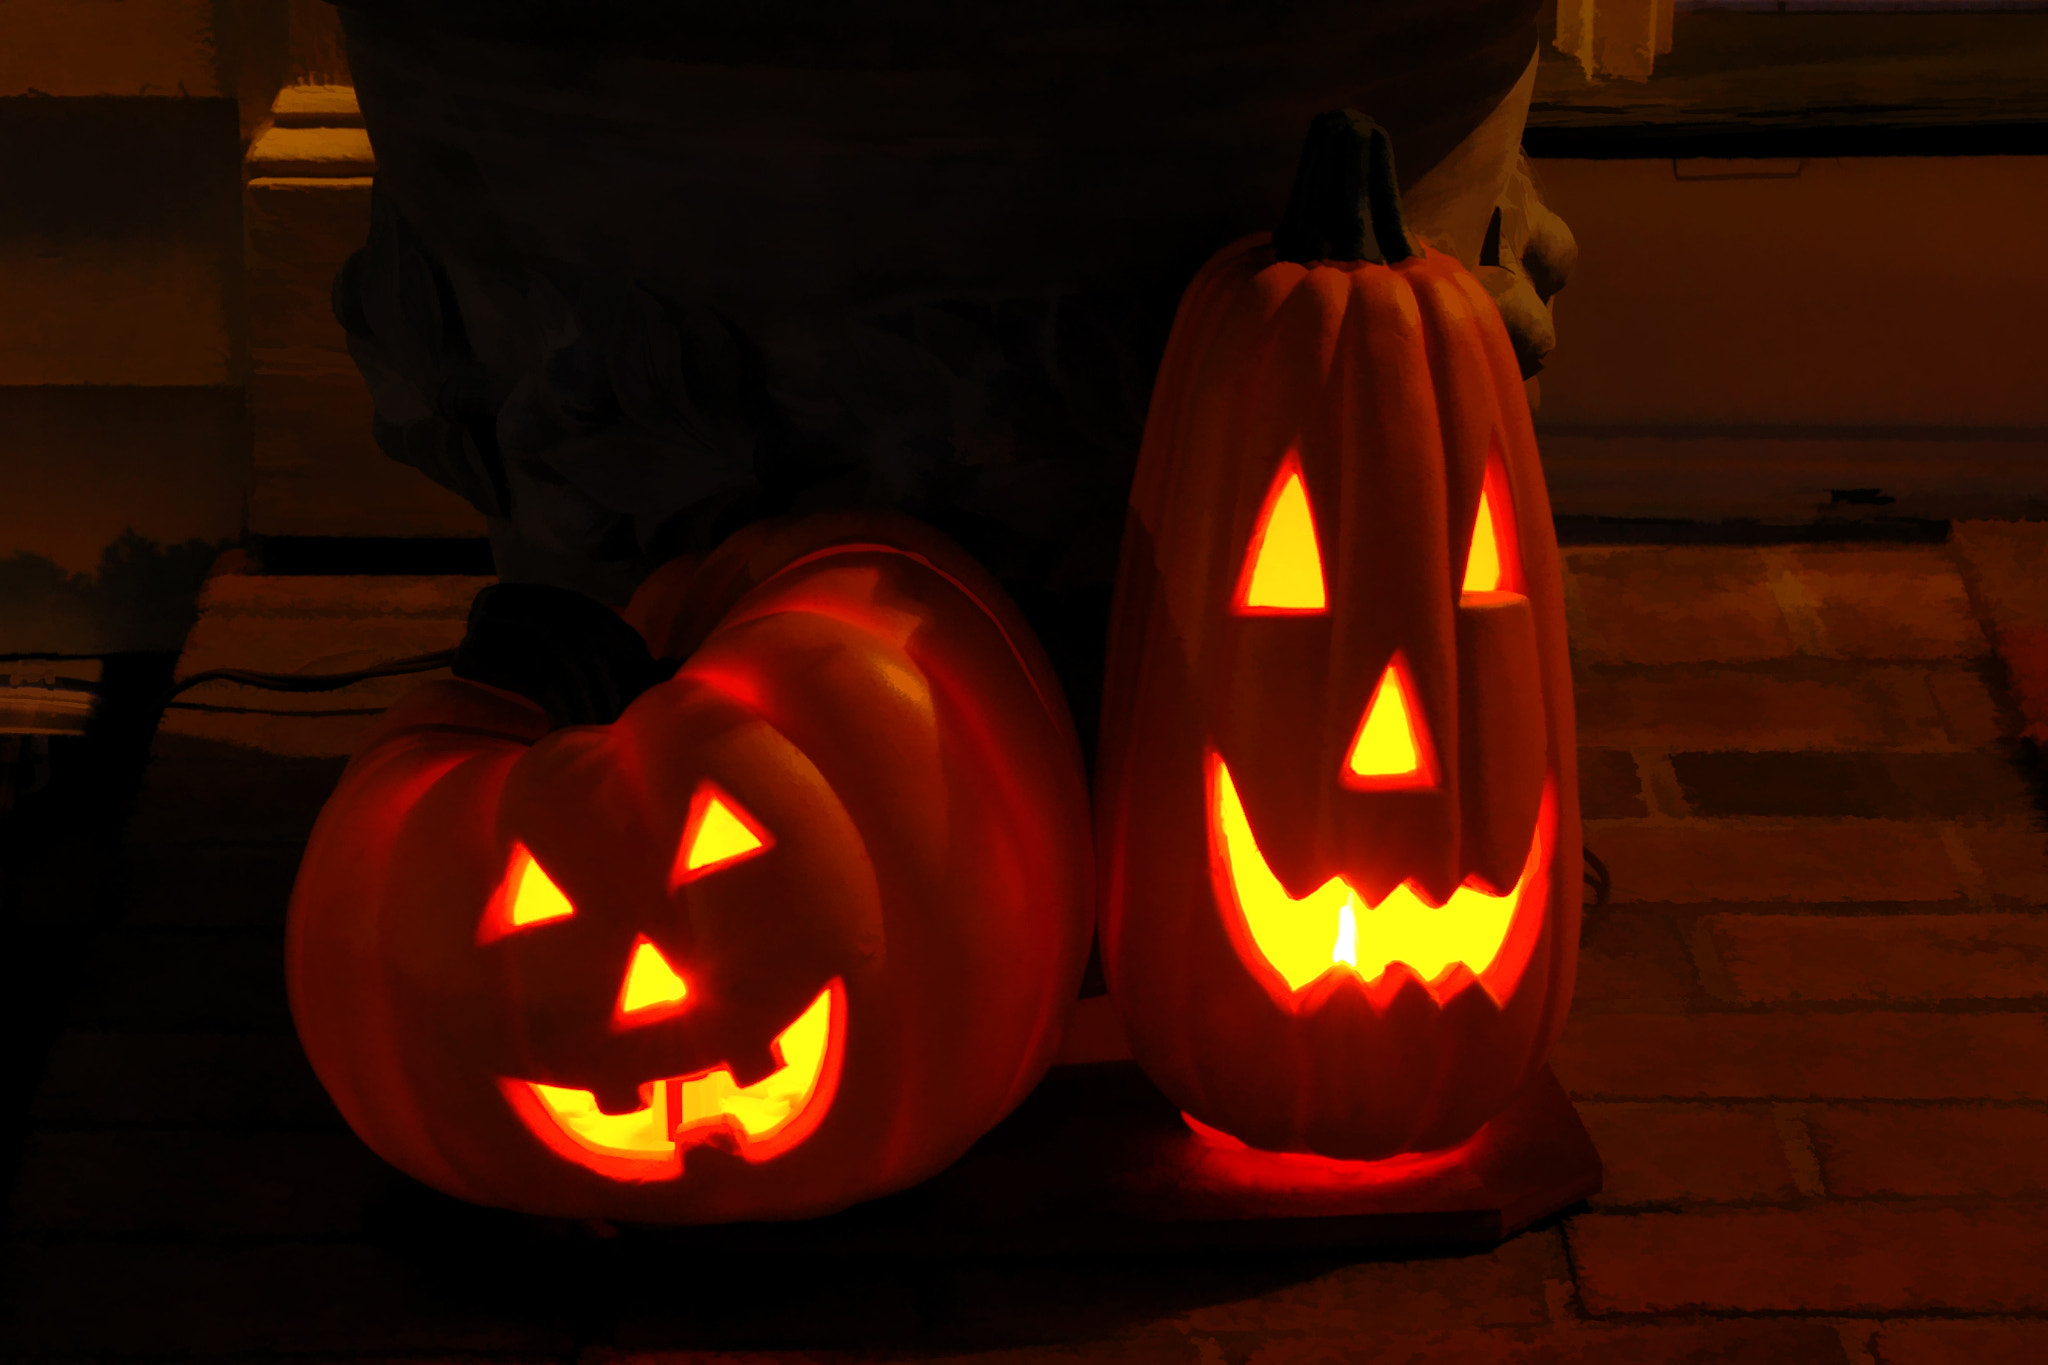 Nikon D70 sample photo. Halloween pumpkins photography